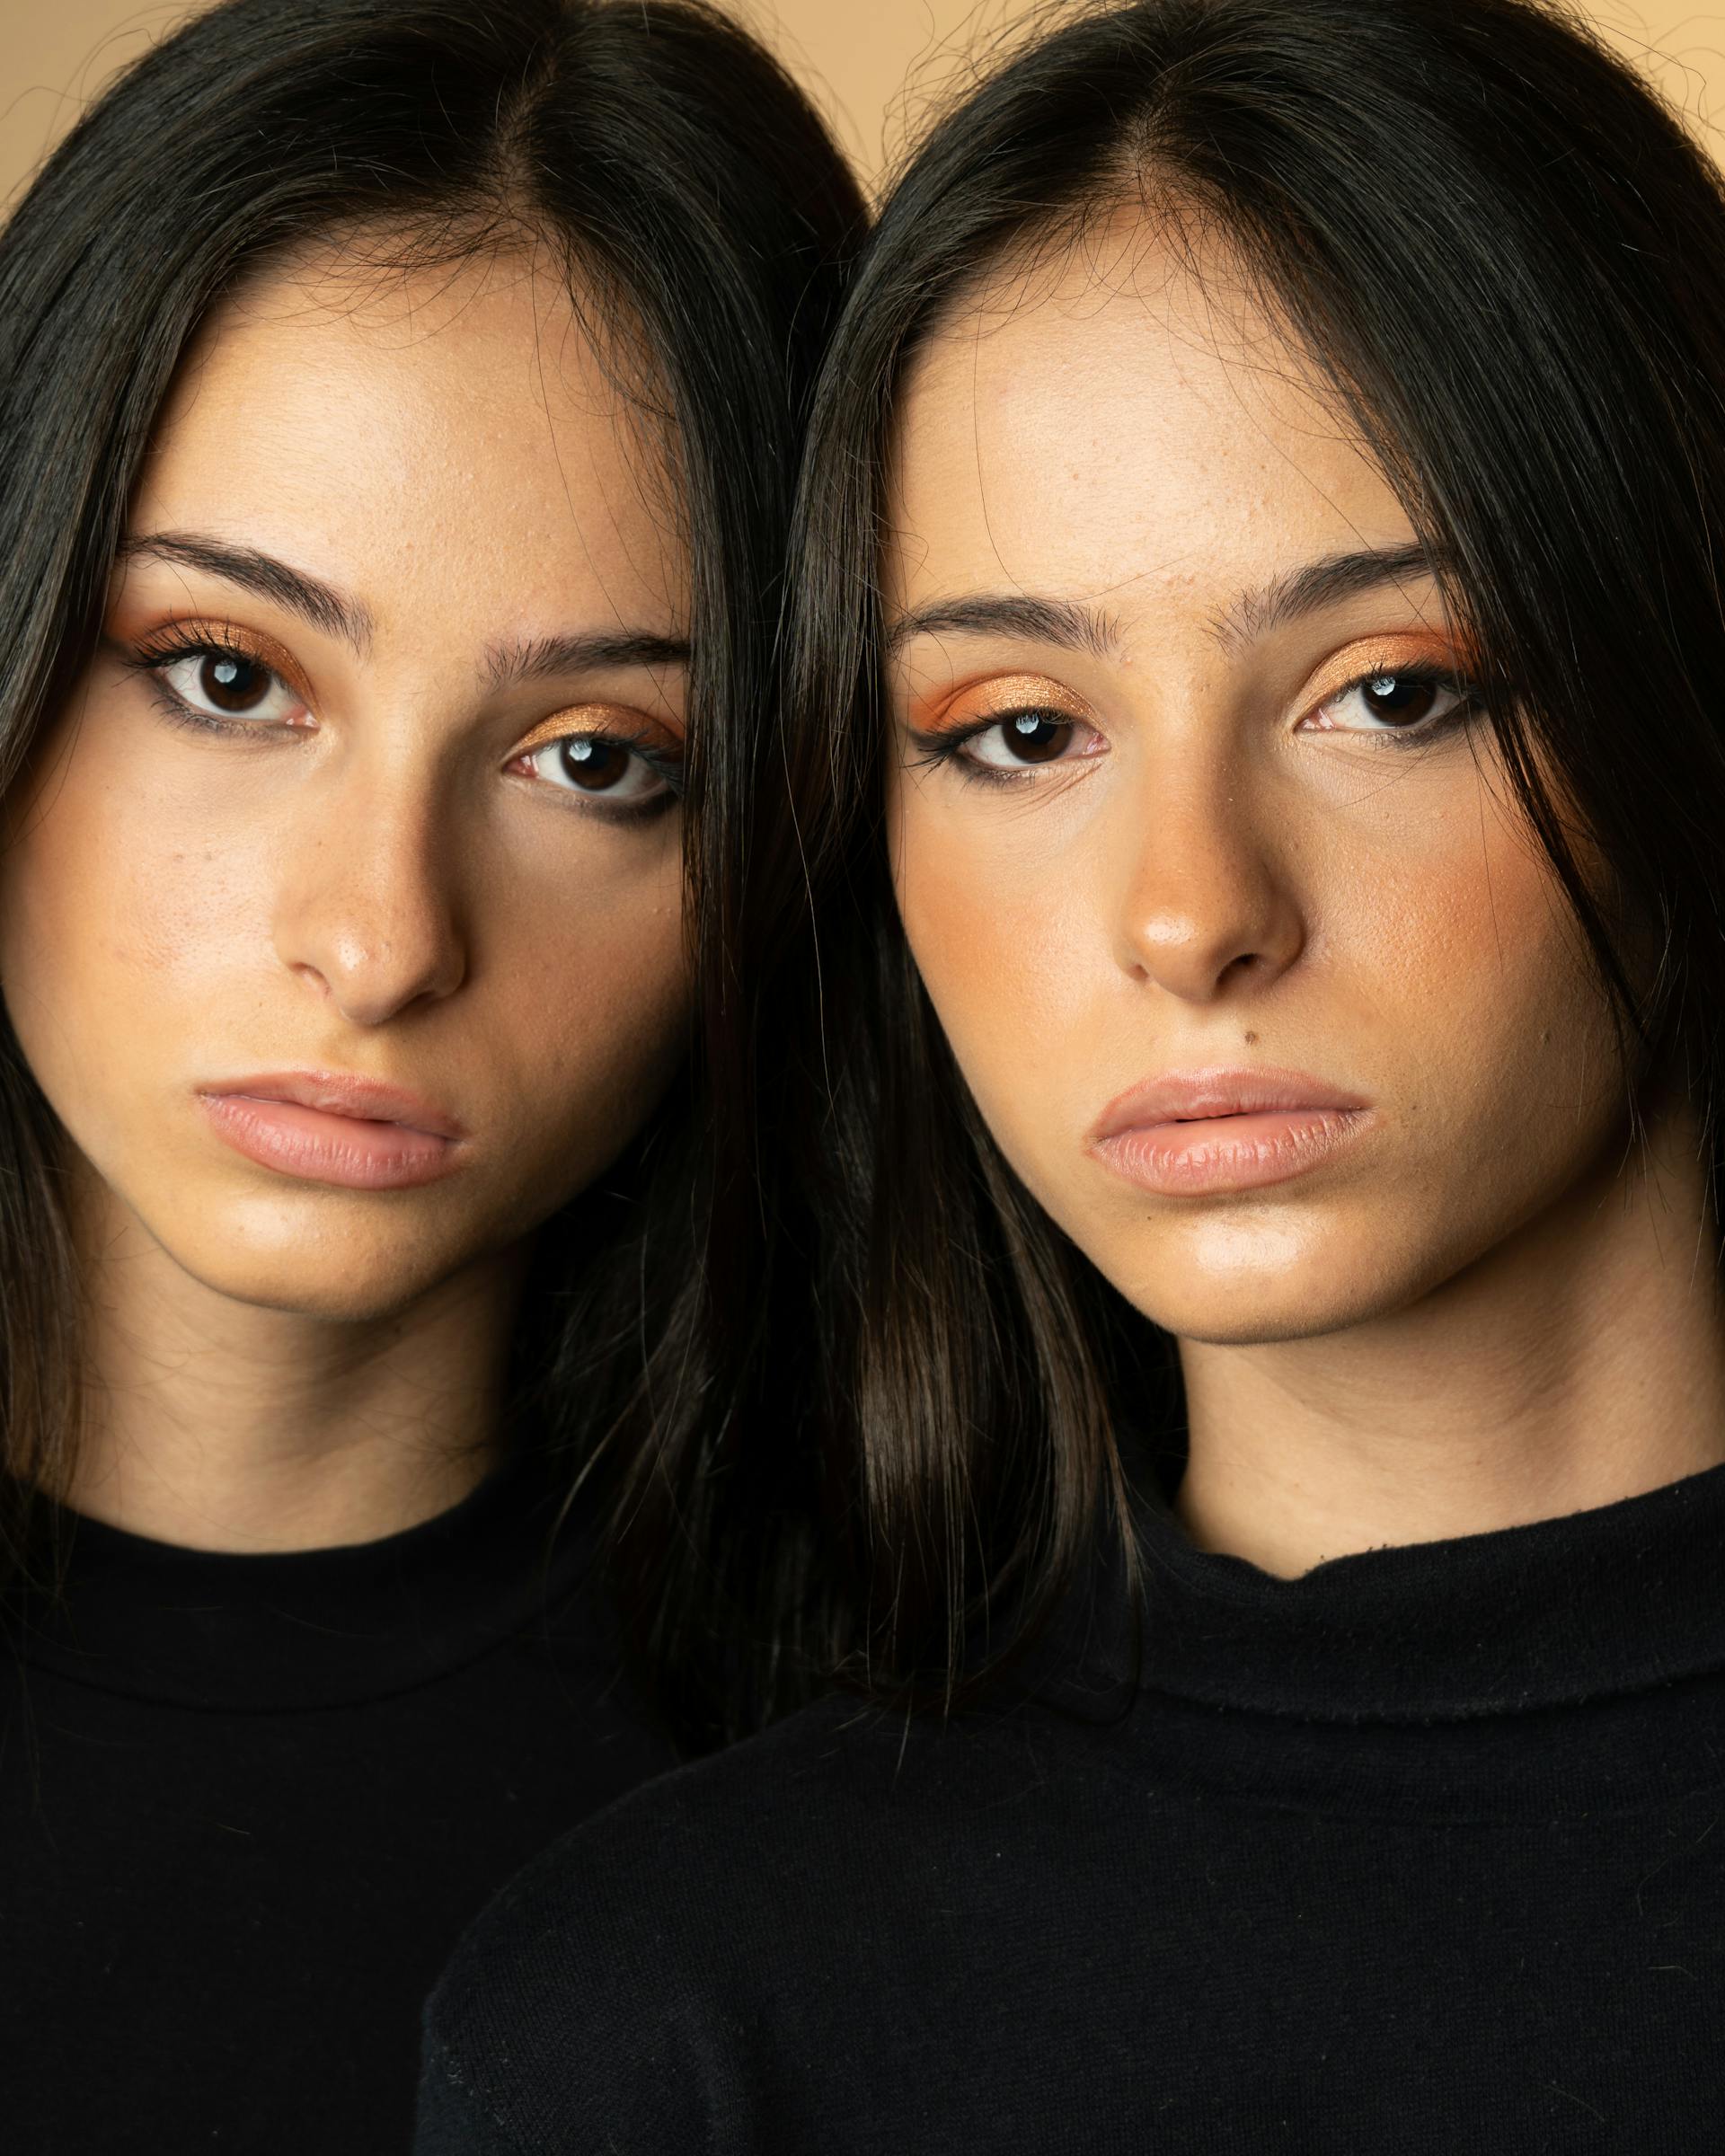 Zwillingsmädchen im Teenageralter | Quelle: Pexels